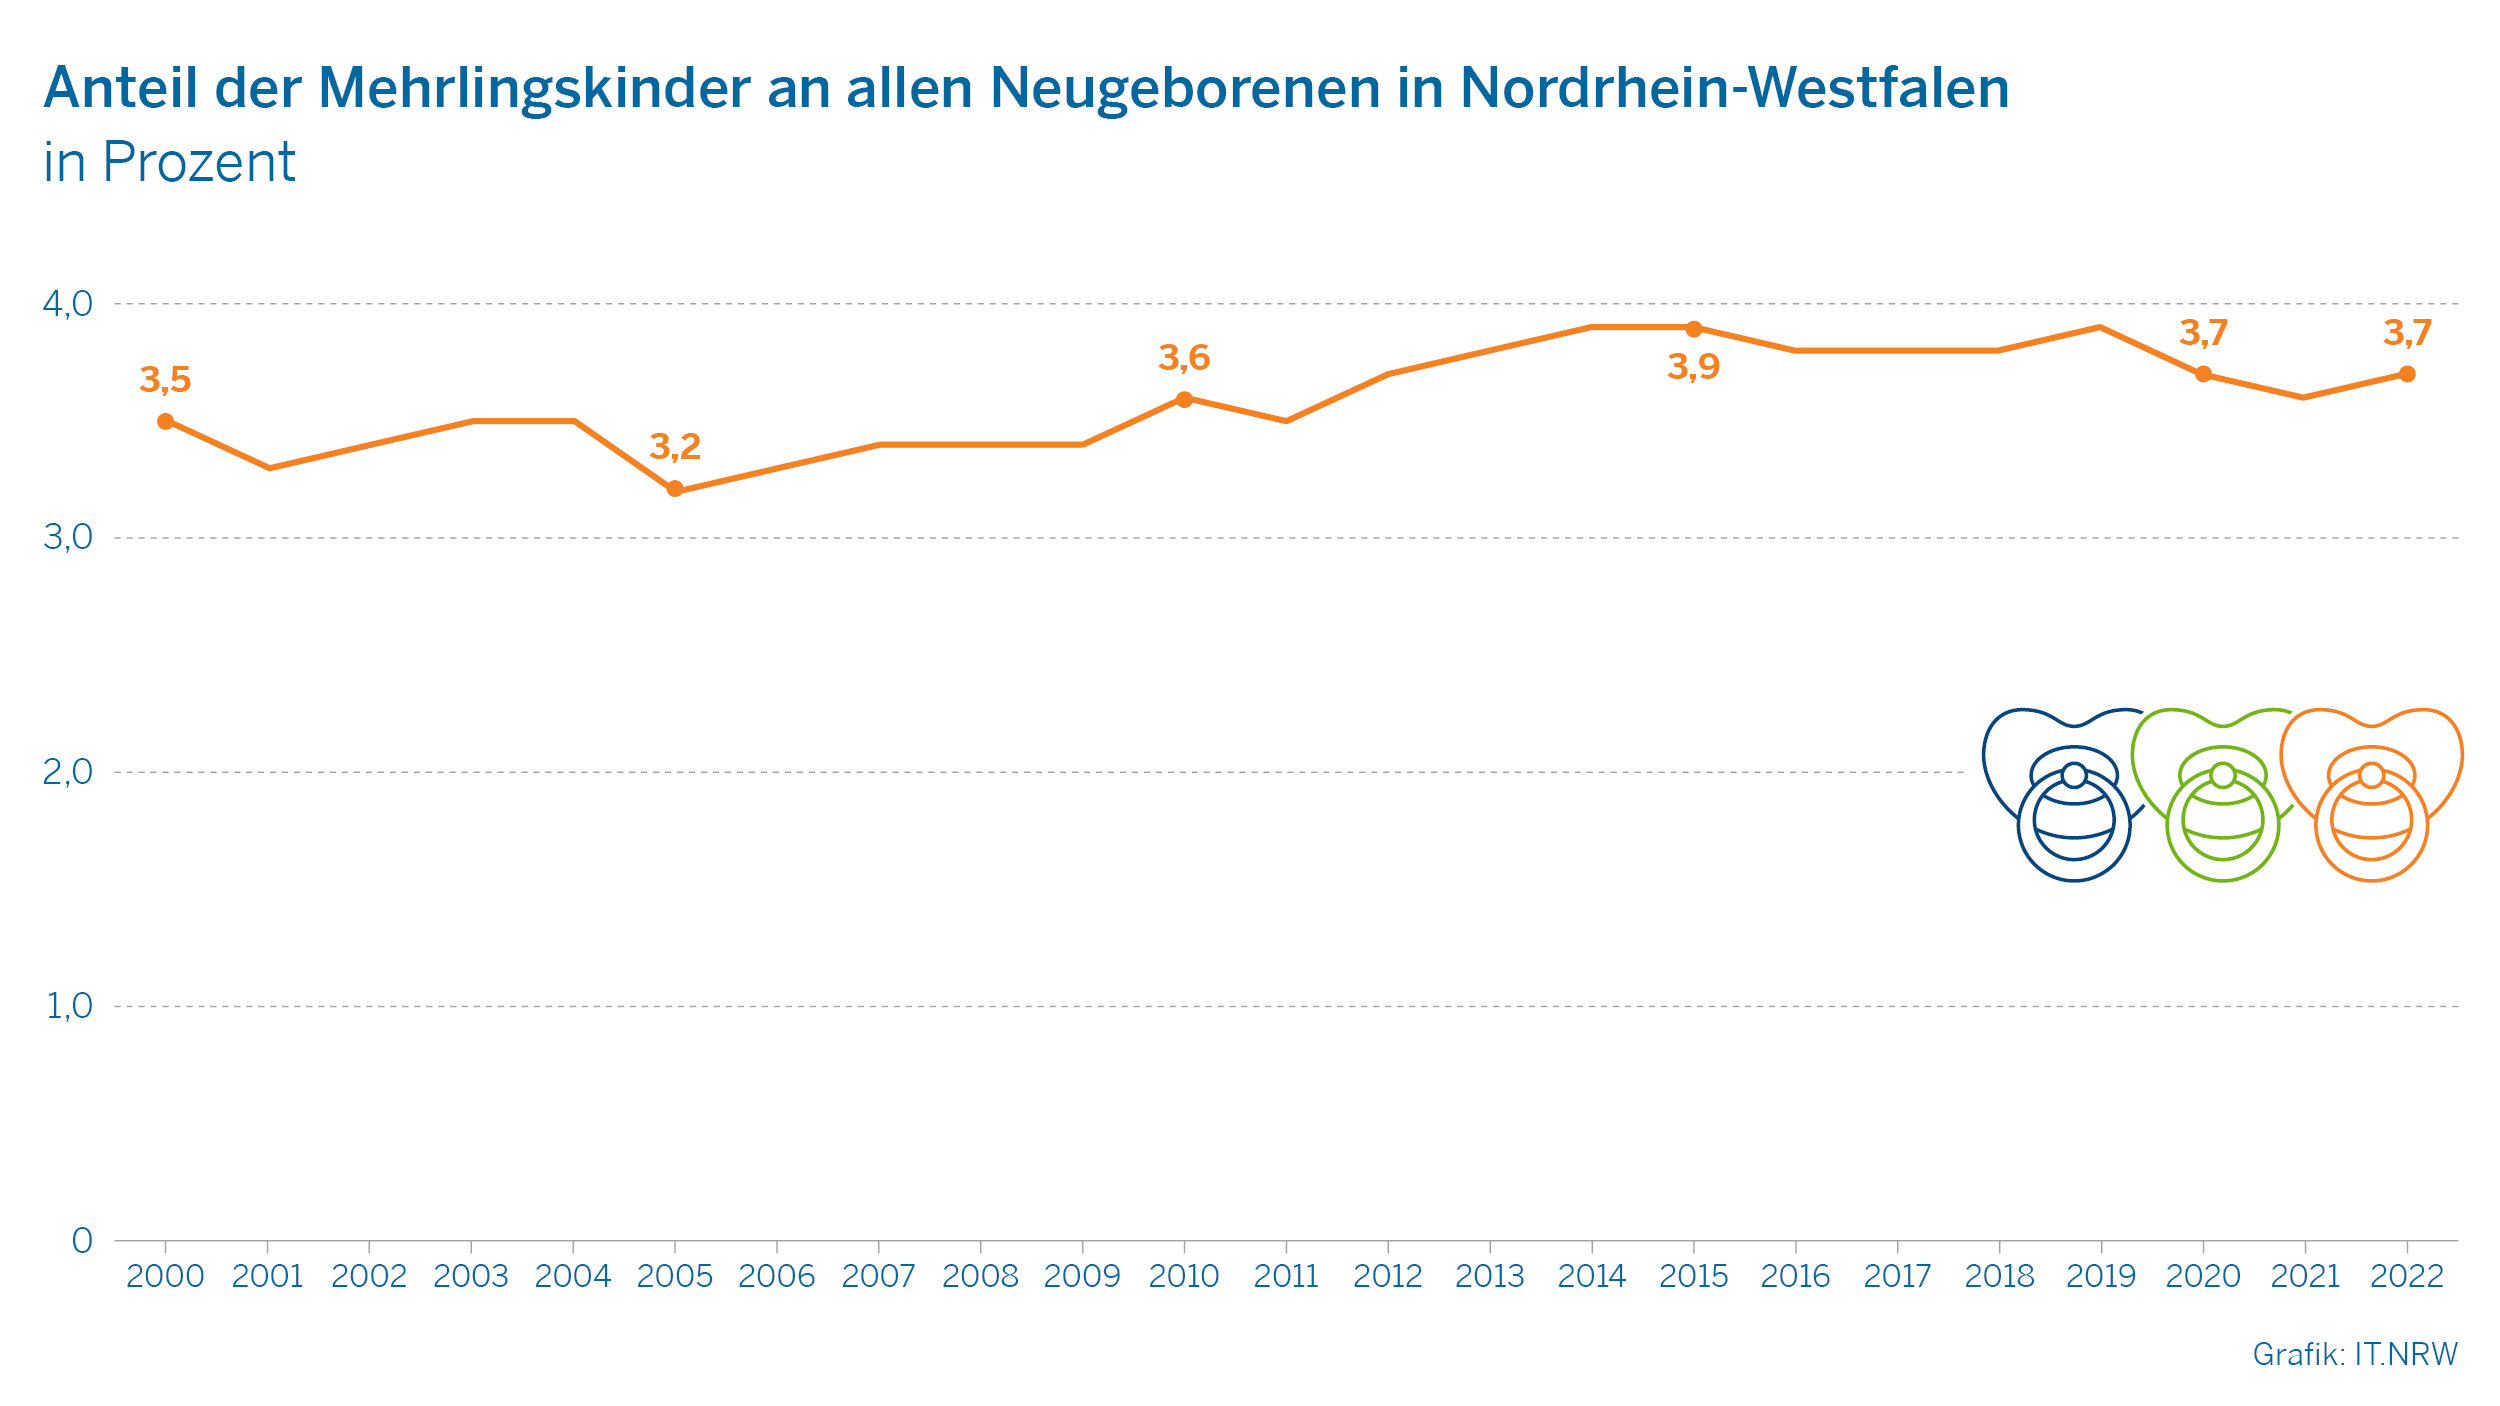 Anteil der Mehrlingskinder an allen Neugeborenen in Nordrhein-Westfalen